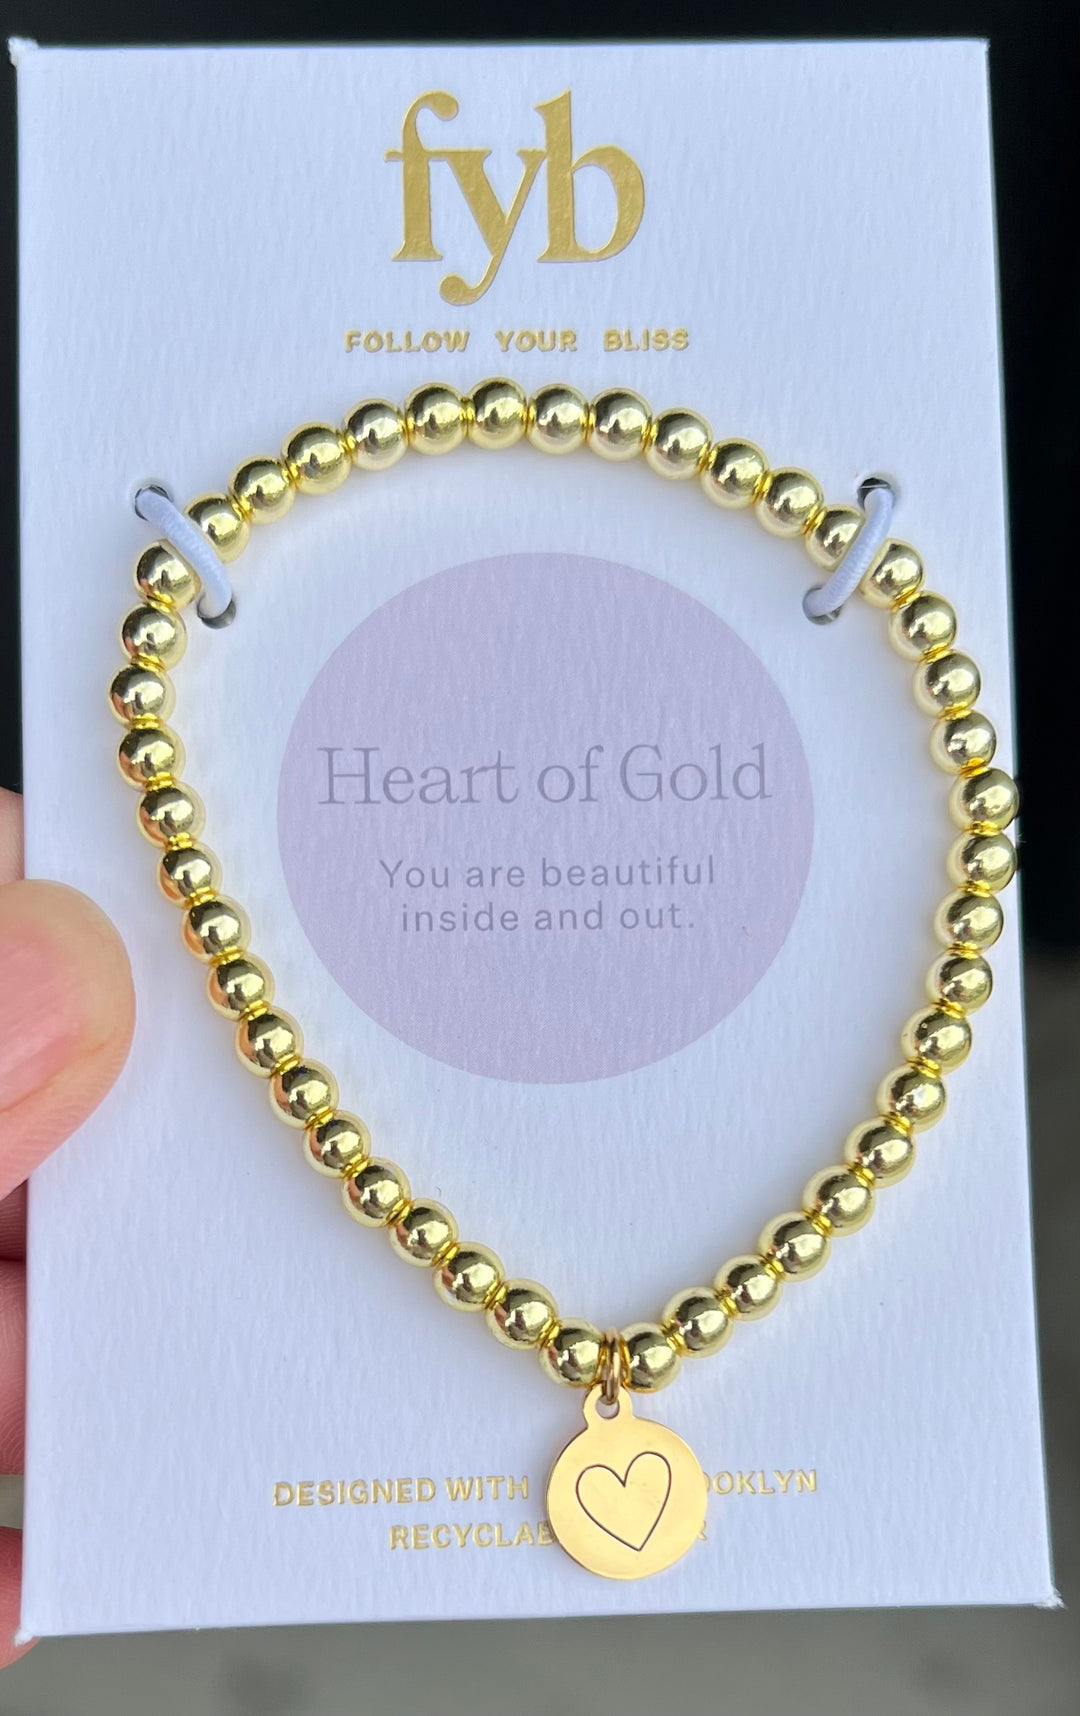 "Heart of Gold" Bracelet
